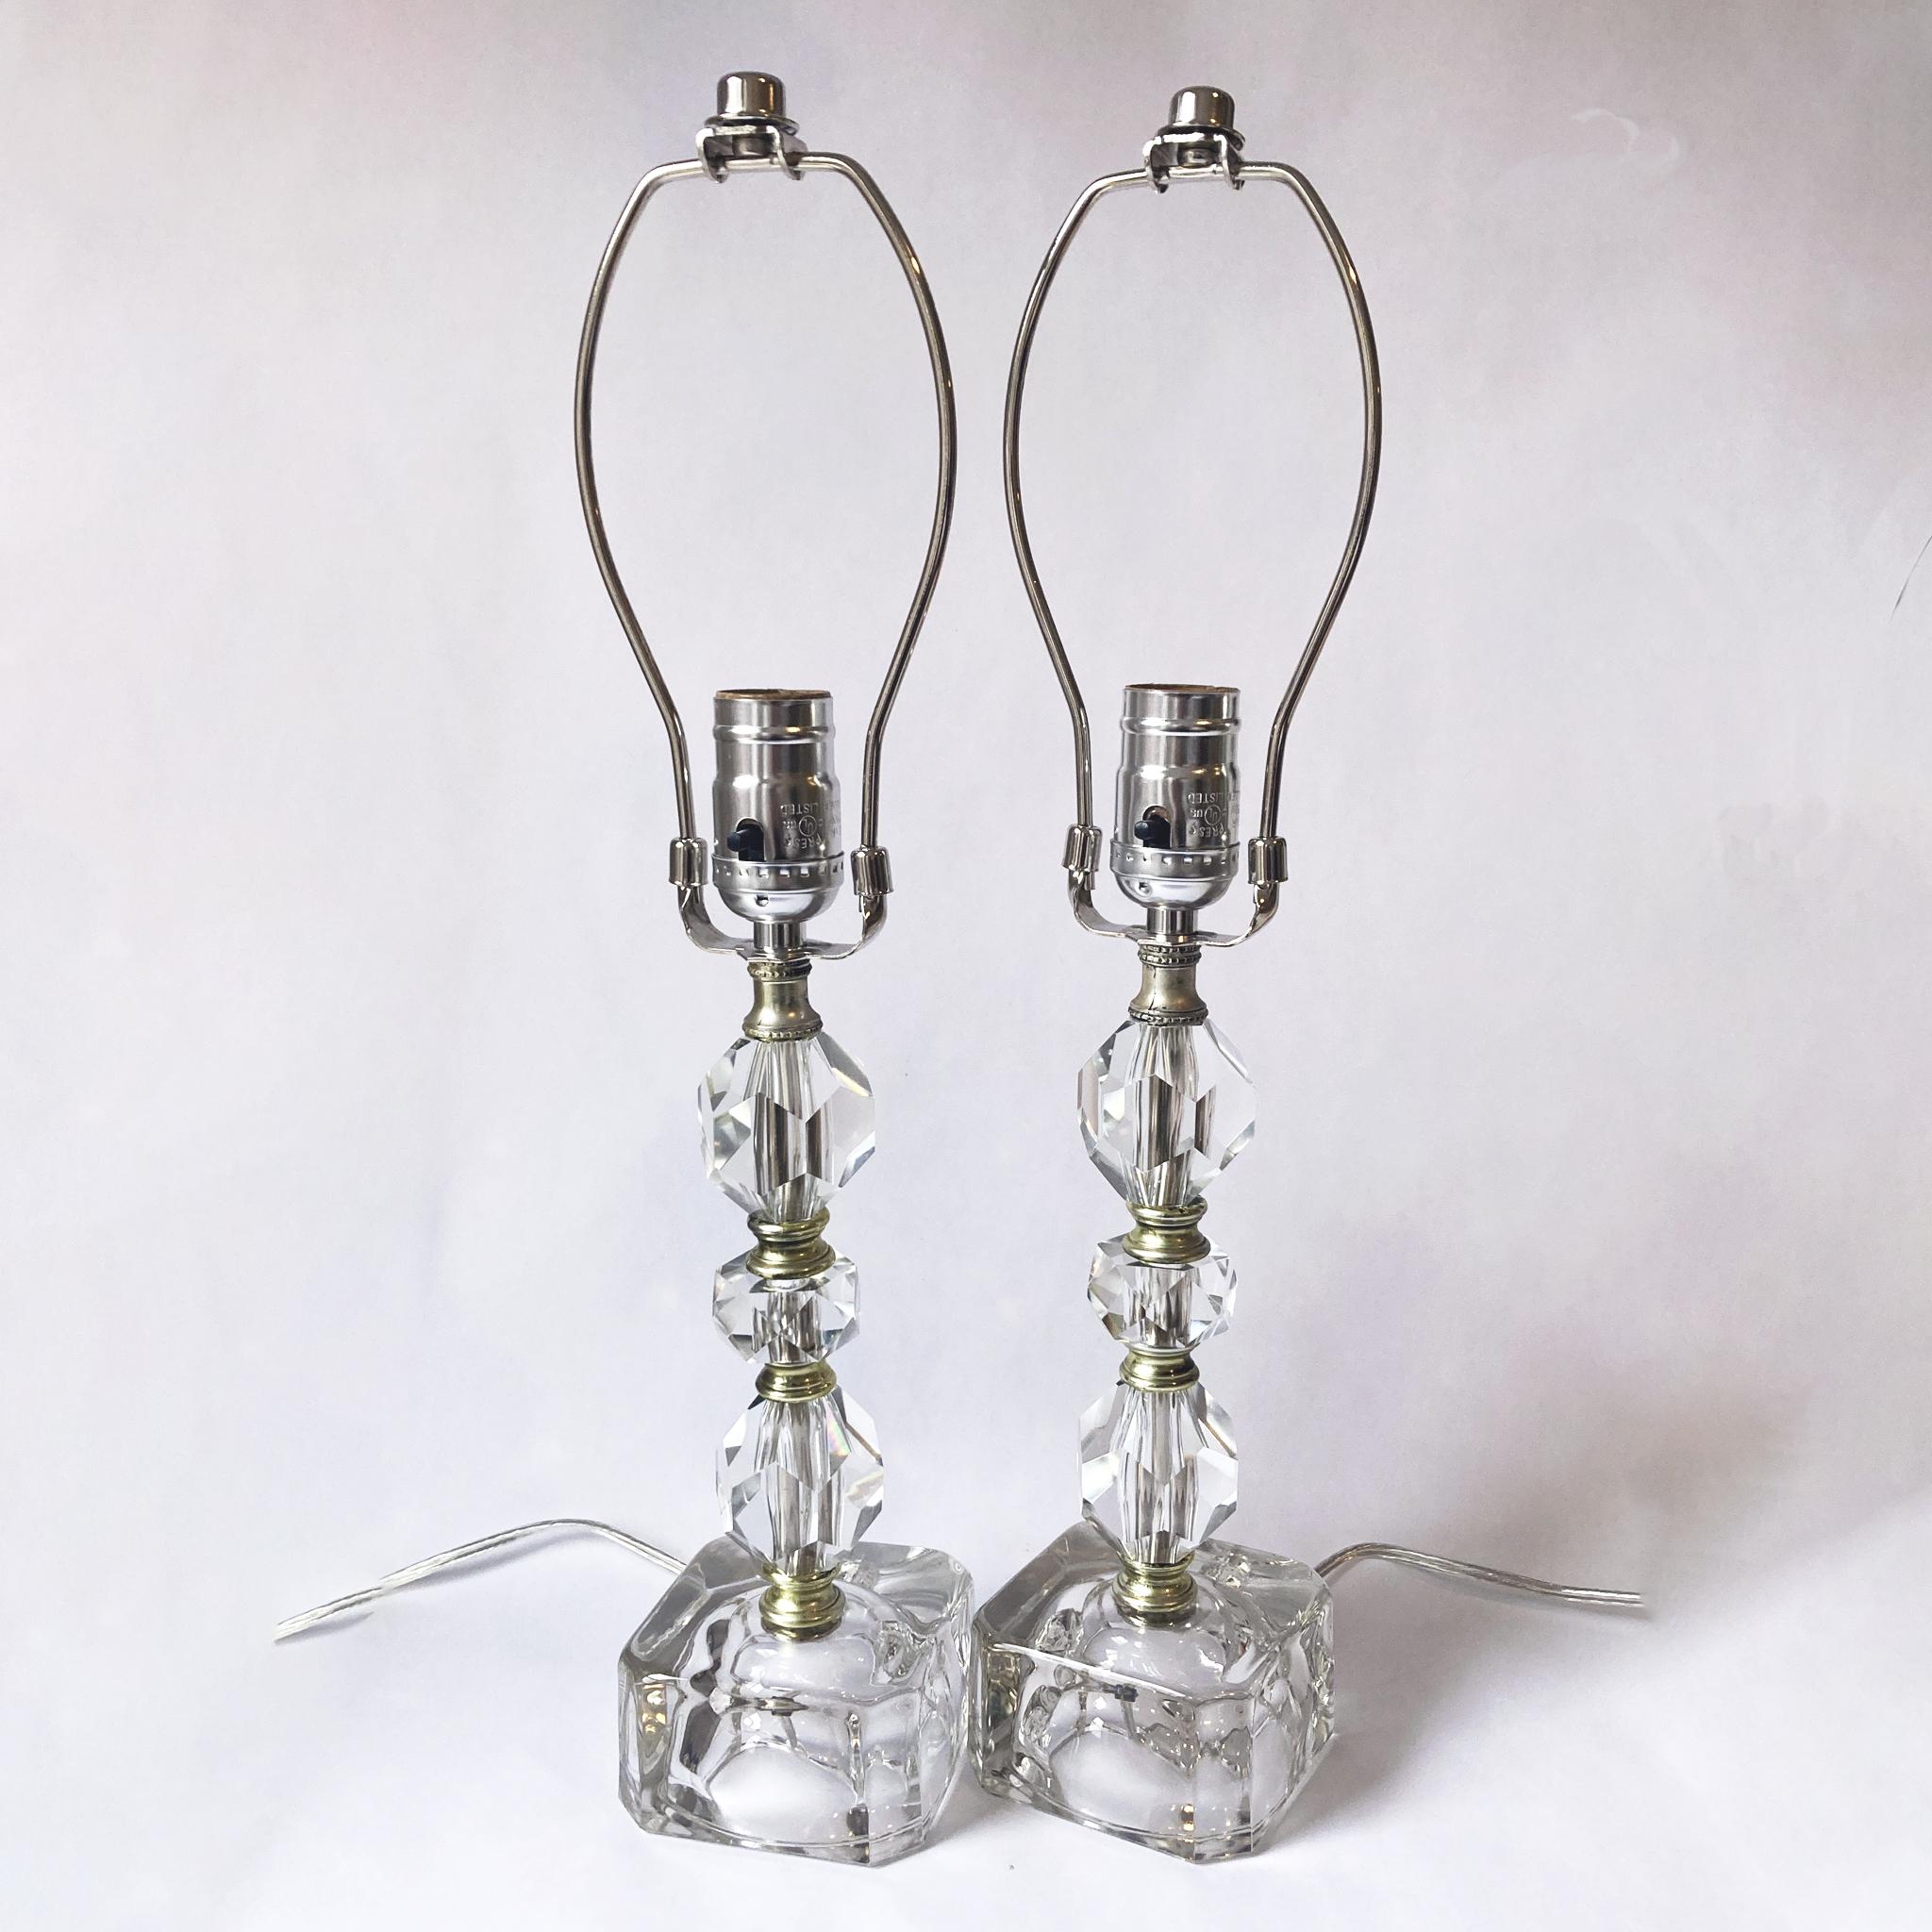 Superbe paire de lampes en cristal facetté avec des bases en verre, années 1950. De grande taille, elles peuvent être utilisées comme lampes de table ou de chevet. Lorsque les lampes sont allumées, les pièces en cristal facetté captent